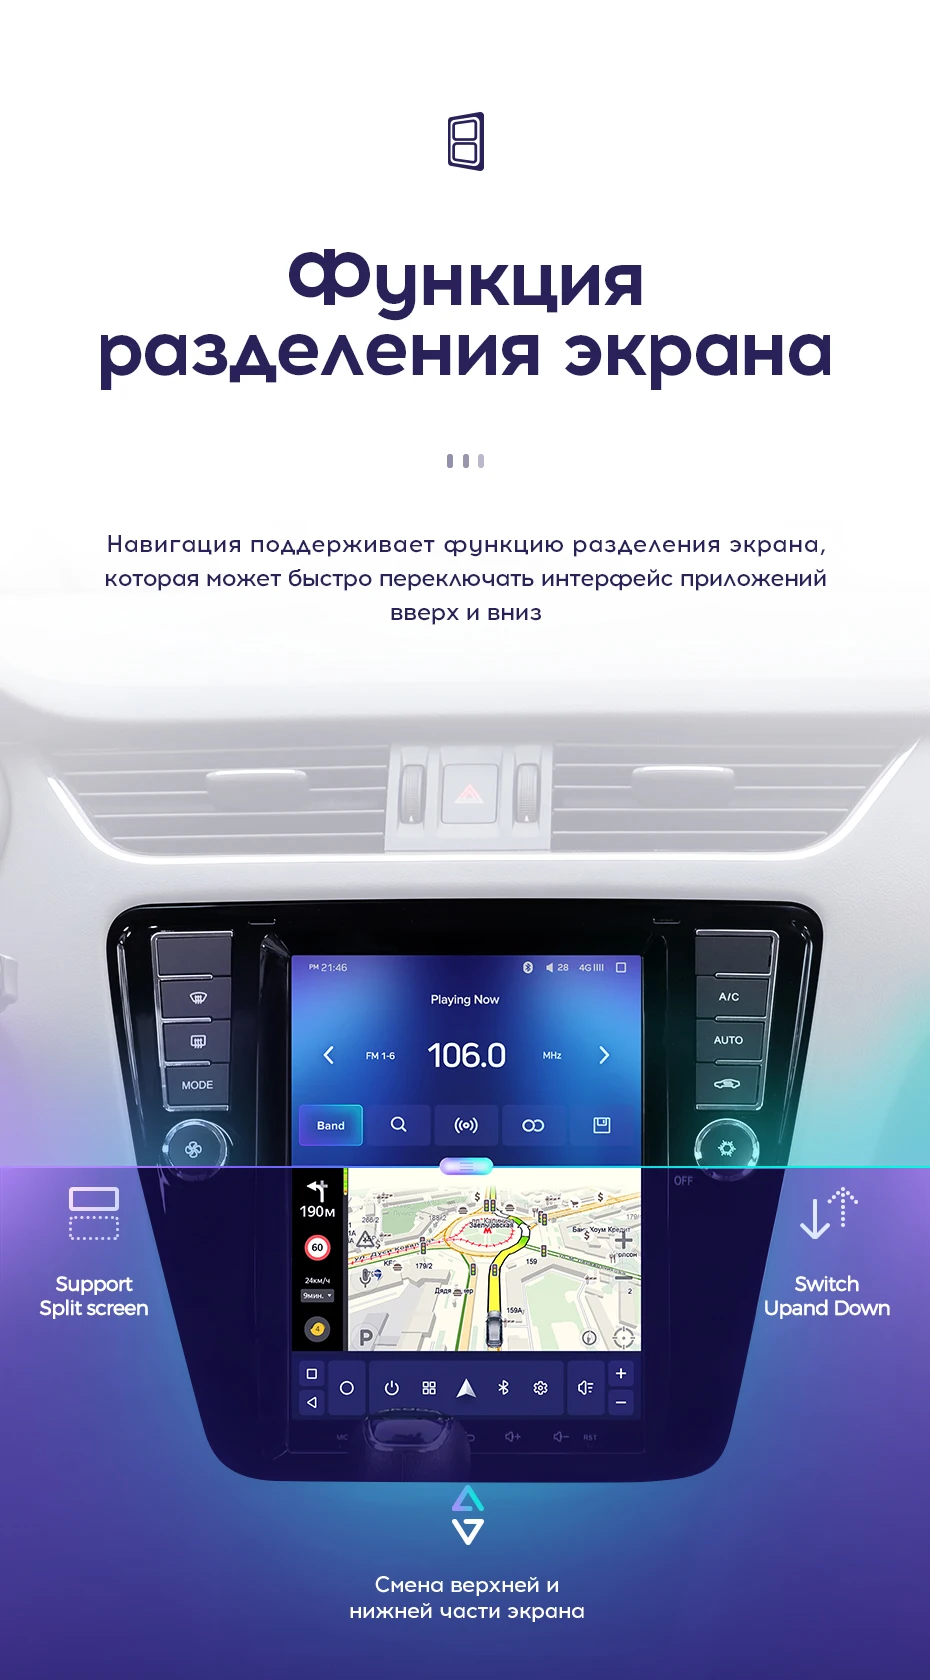 TEYES TPRO Штатная магнитола для Шкода Октавия 3 Экран Тесла Skoda Octavia 3 A7 Tesla screen Android 8.1, до 8-ЯДЕР, до 4+ 64ГБ 32EQ+ DSP 2DIN автомагнитола 2 DIN DVD GPS мультимедиа автомобиля головное устройство